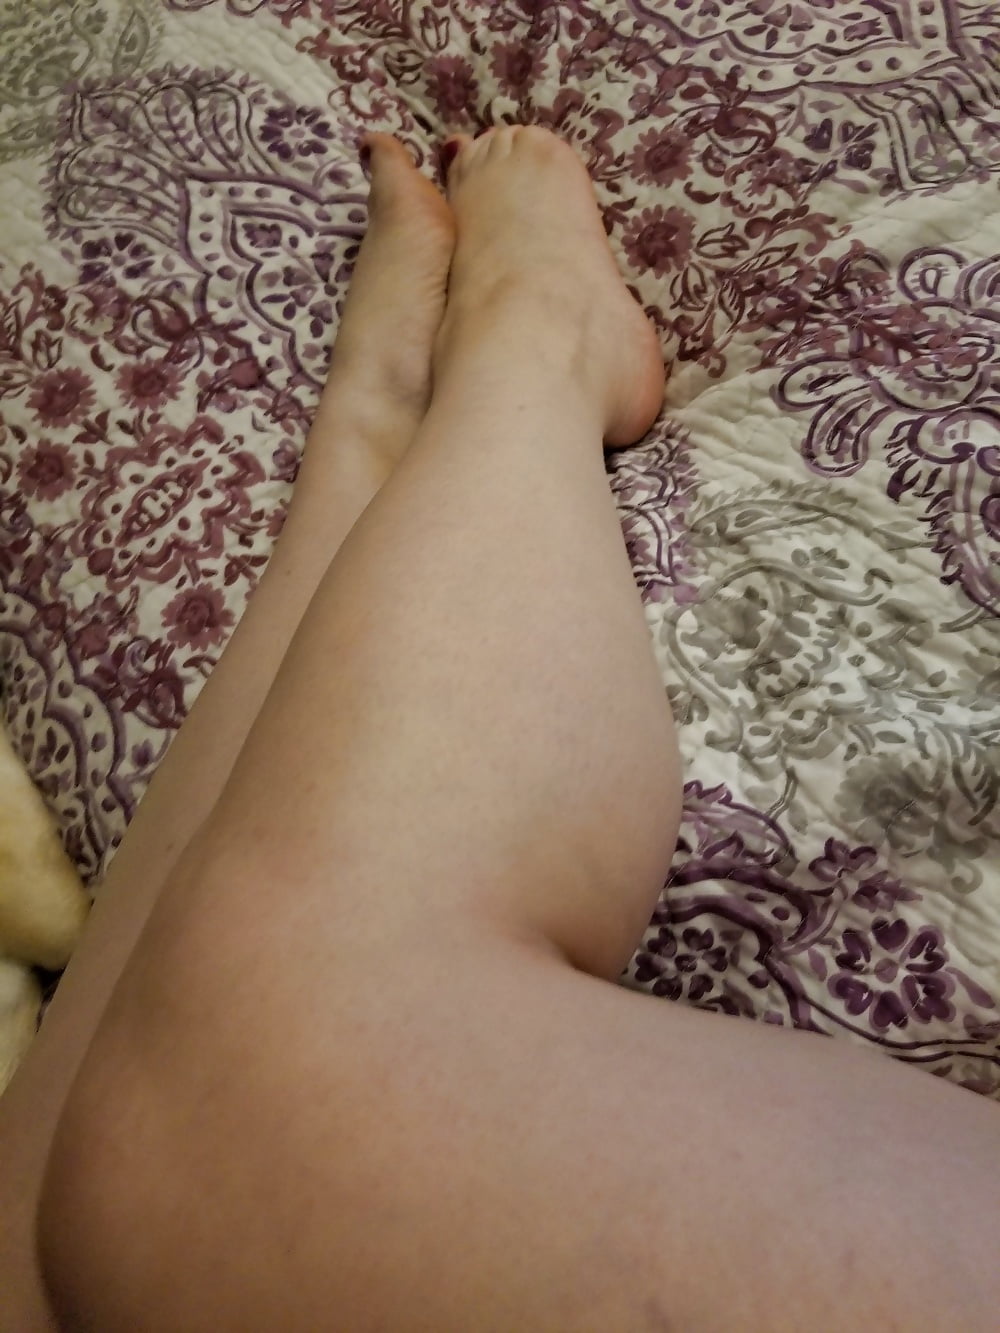 Pieds, jambes, talons et bottes de la douce ménagère sexy
 #106605642